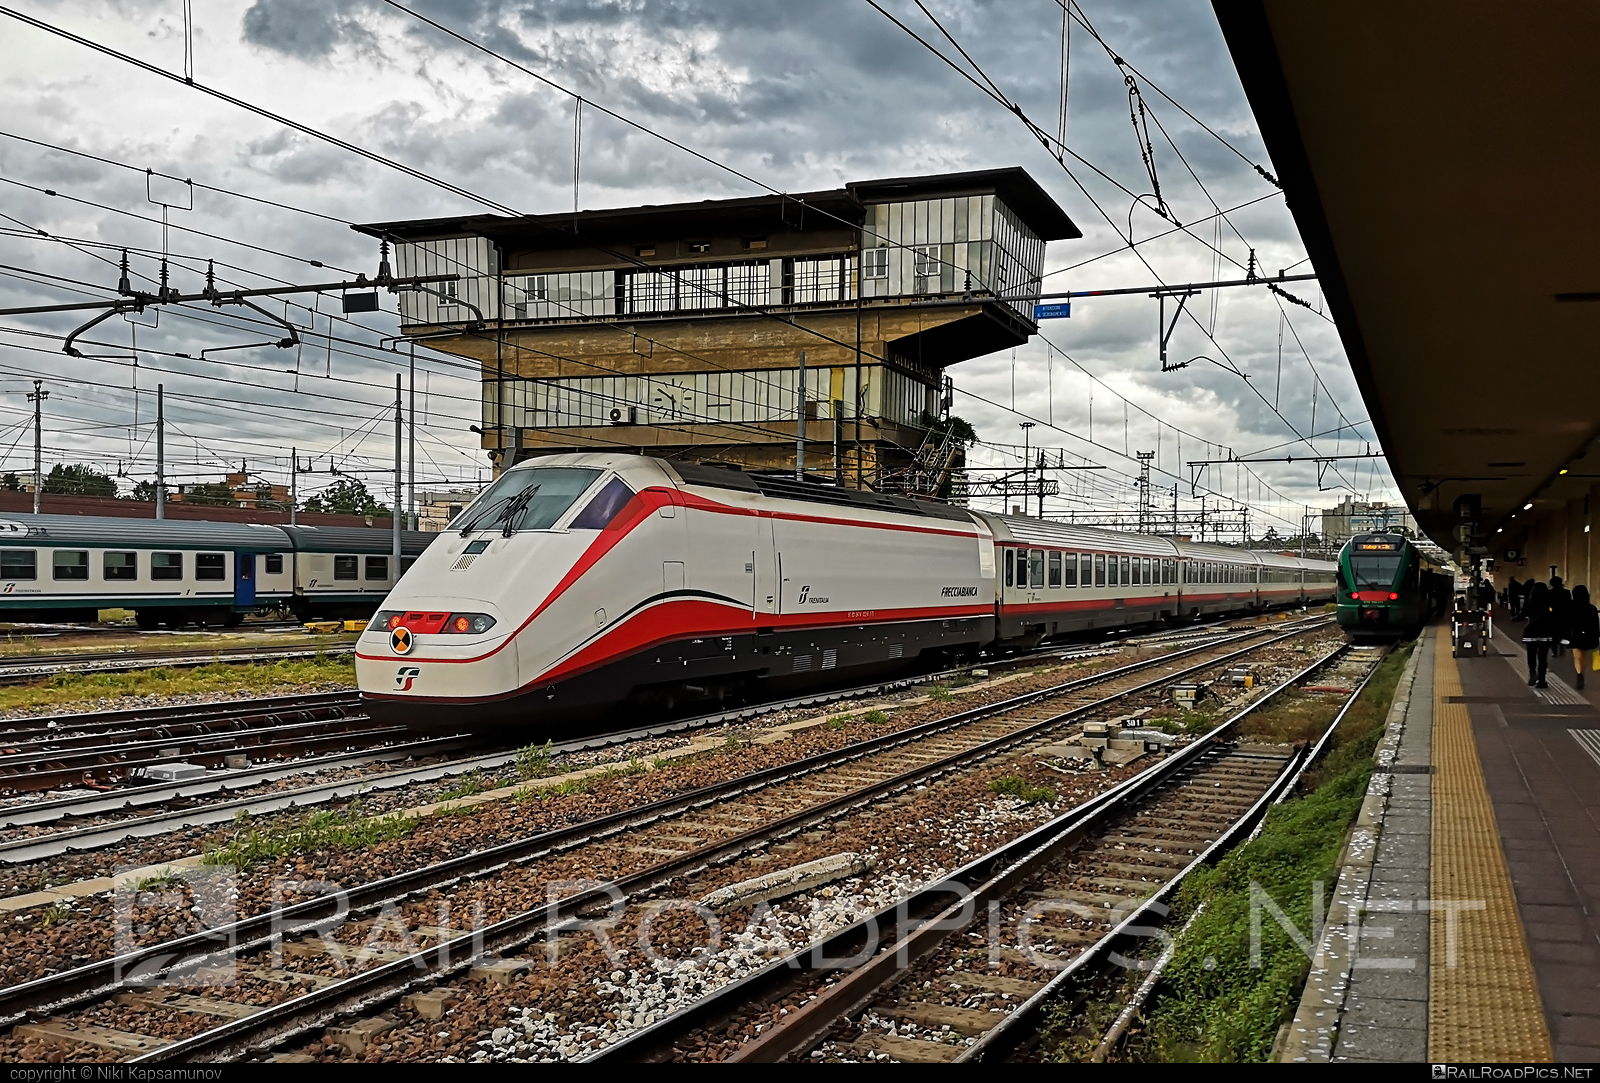 Consorzio TREVI Class E.414 - 414 104-6 operated by Trenitalia S.p.A. #classe414 #consorziotrevi #e414 #ferroviedellostato #frecciabianca #fs #fsclasse414 #fsitaliane #lefrecce #trenitalia #trenitaliaspa #trevie414